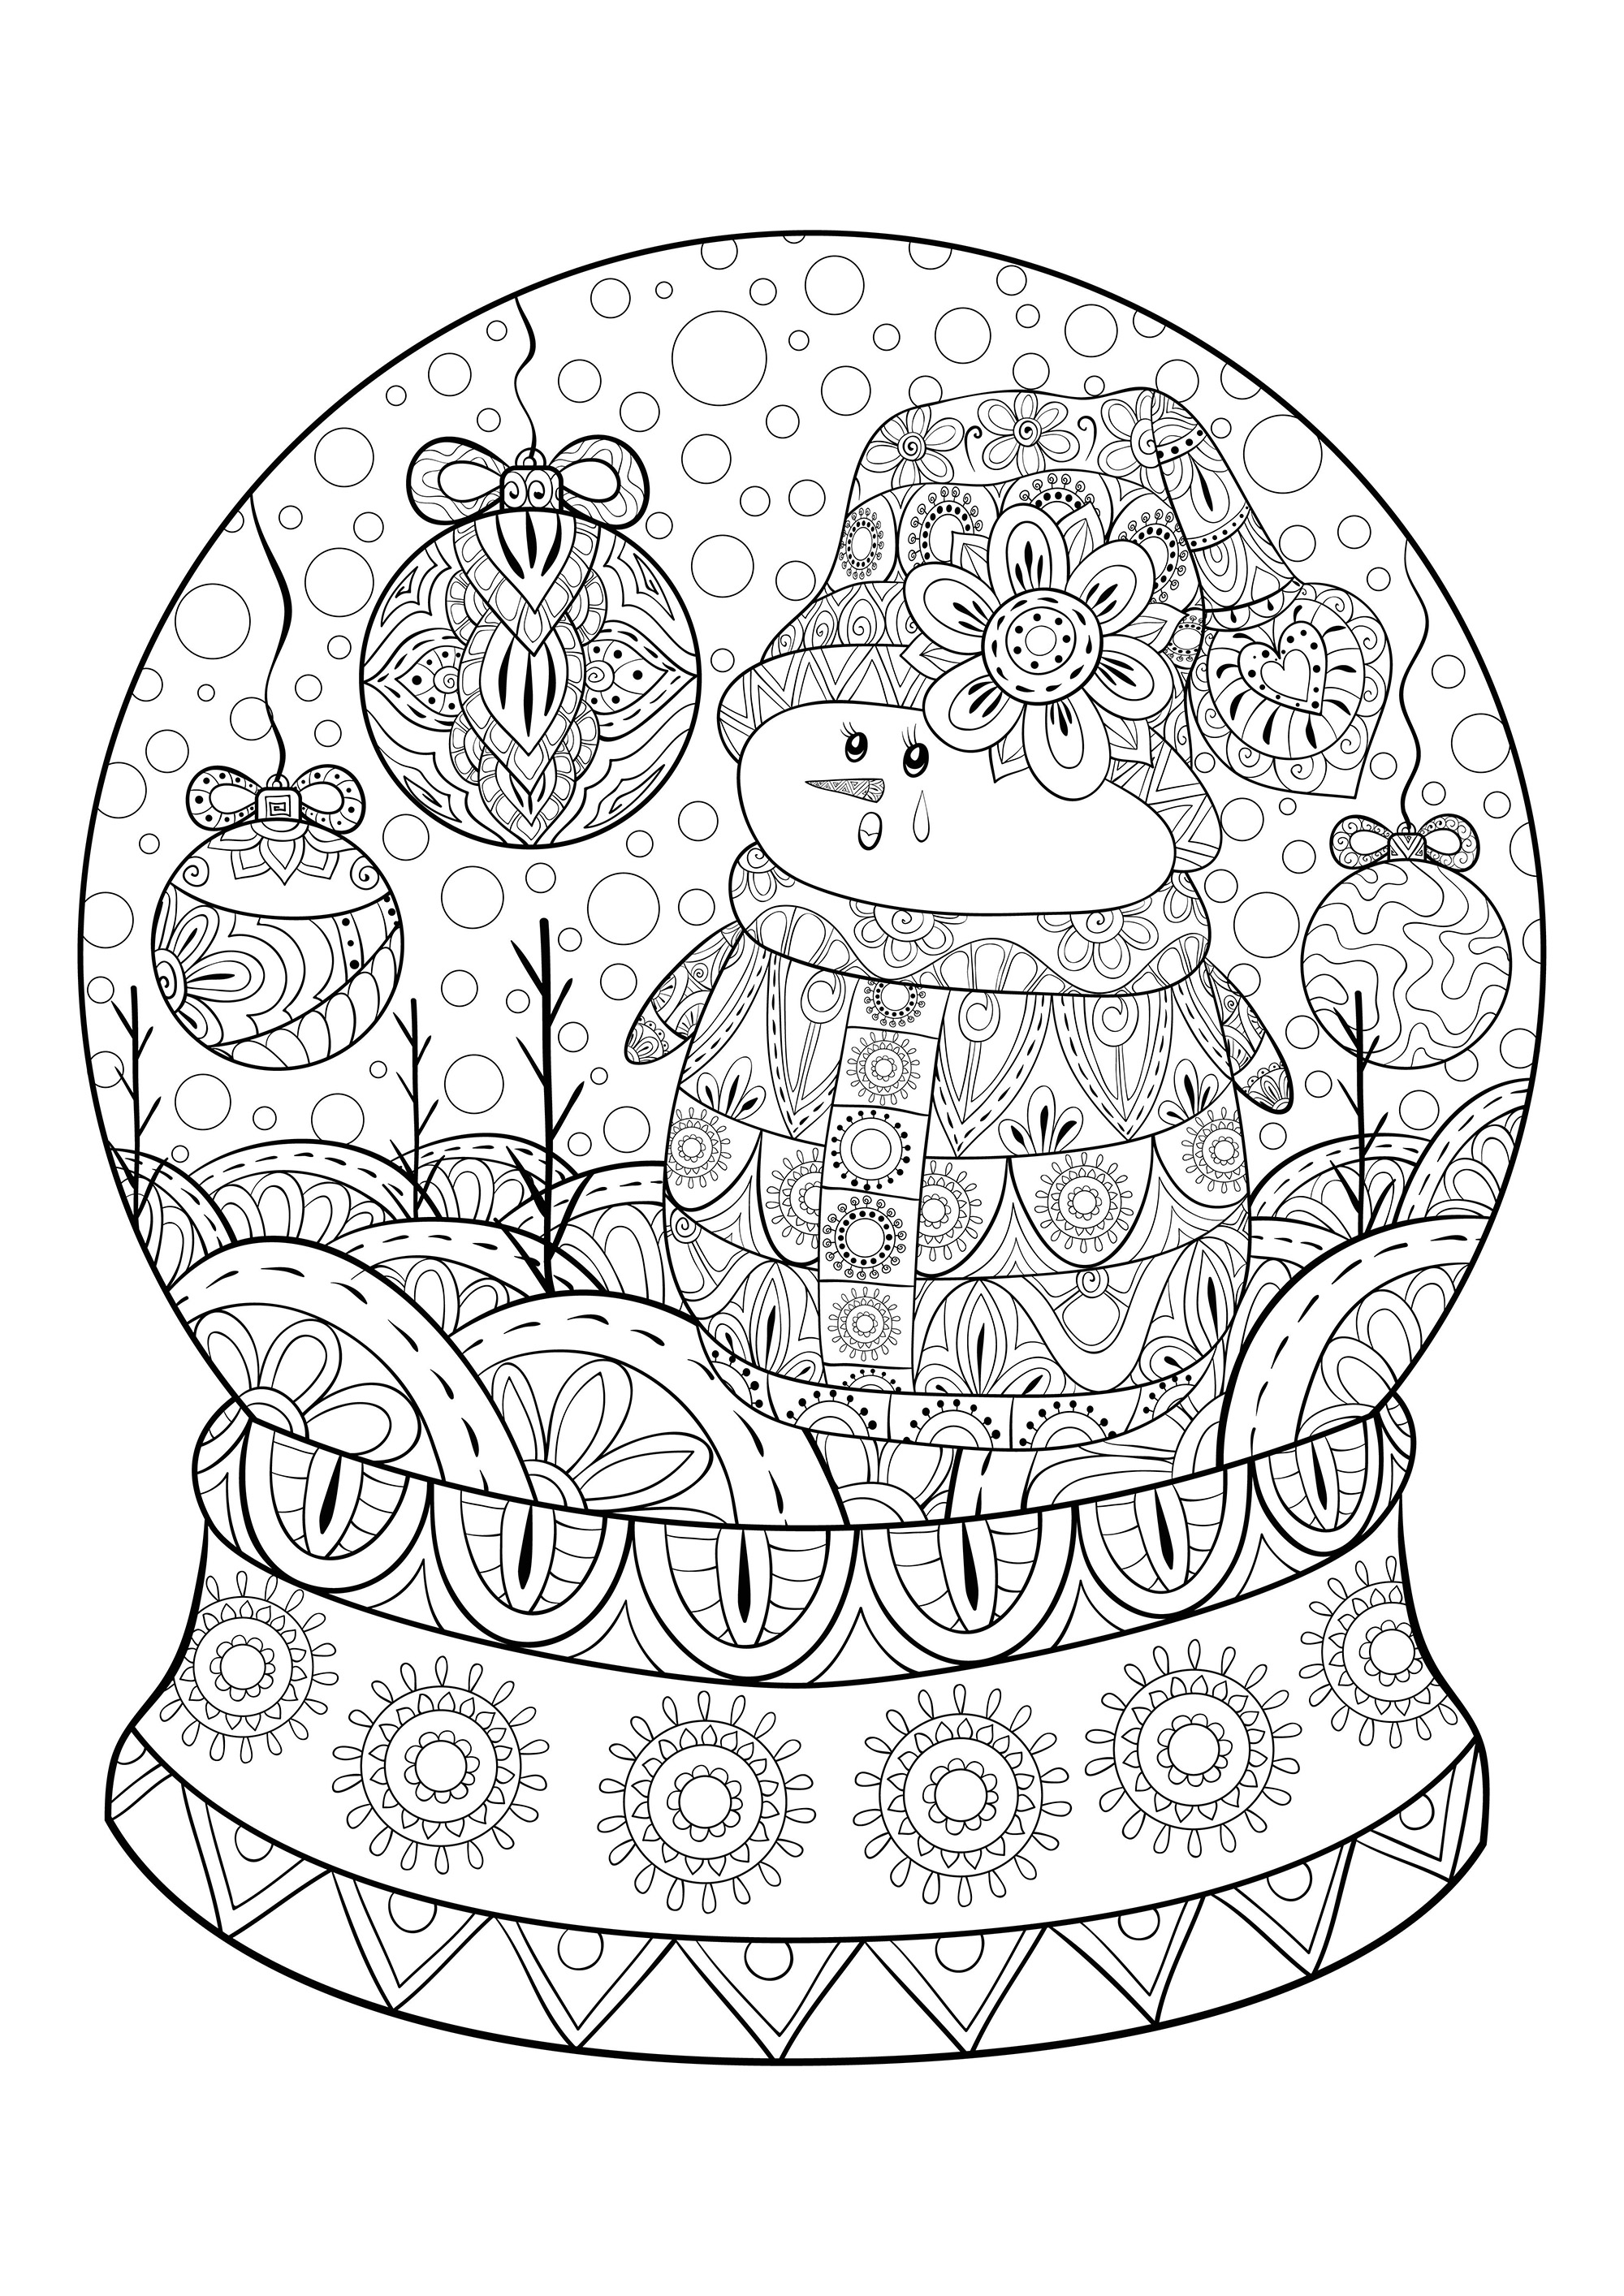 Una palla di neve natalizia con un pupazzo di neve e palline di decorazioni natalizie, Fonte : 123rf   Artista : Nonuzza